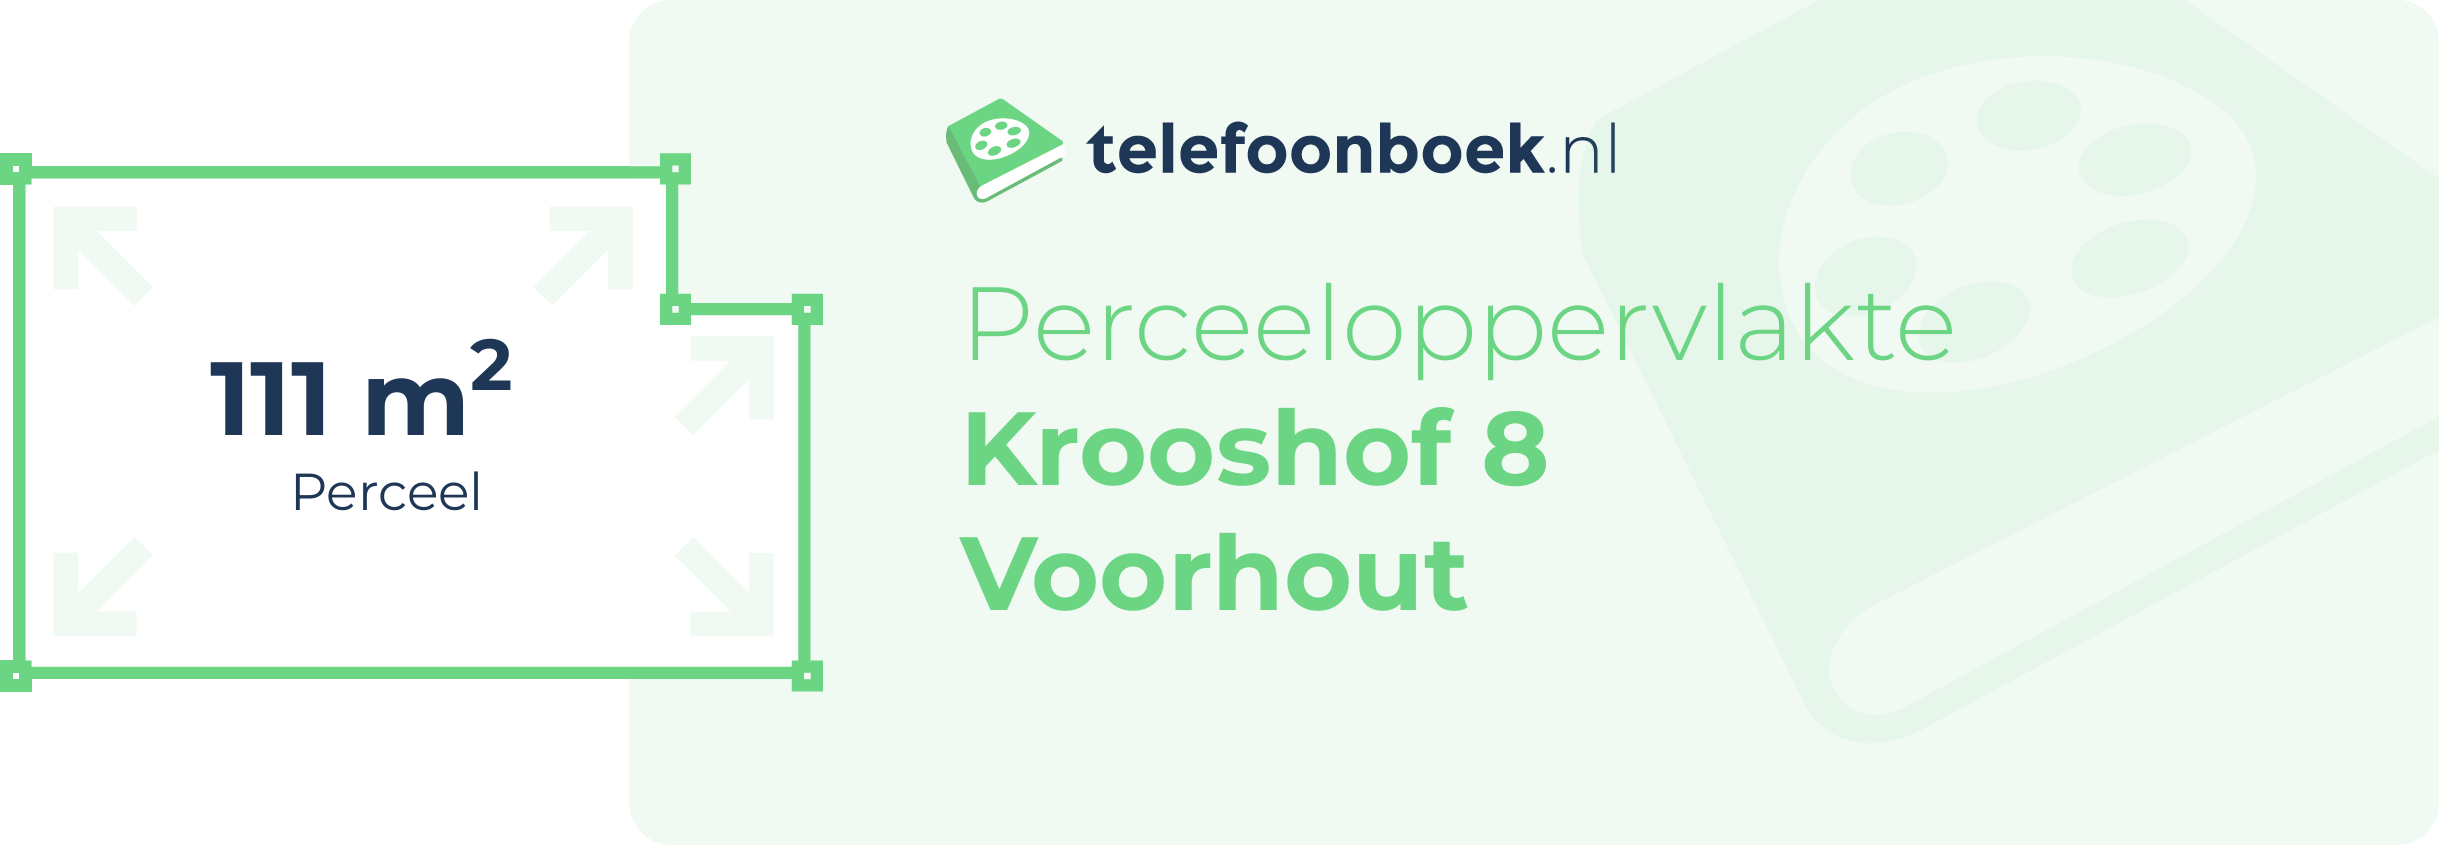 Perceeloppervlakte Krooshof 8 Voorhout